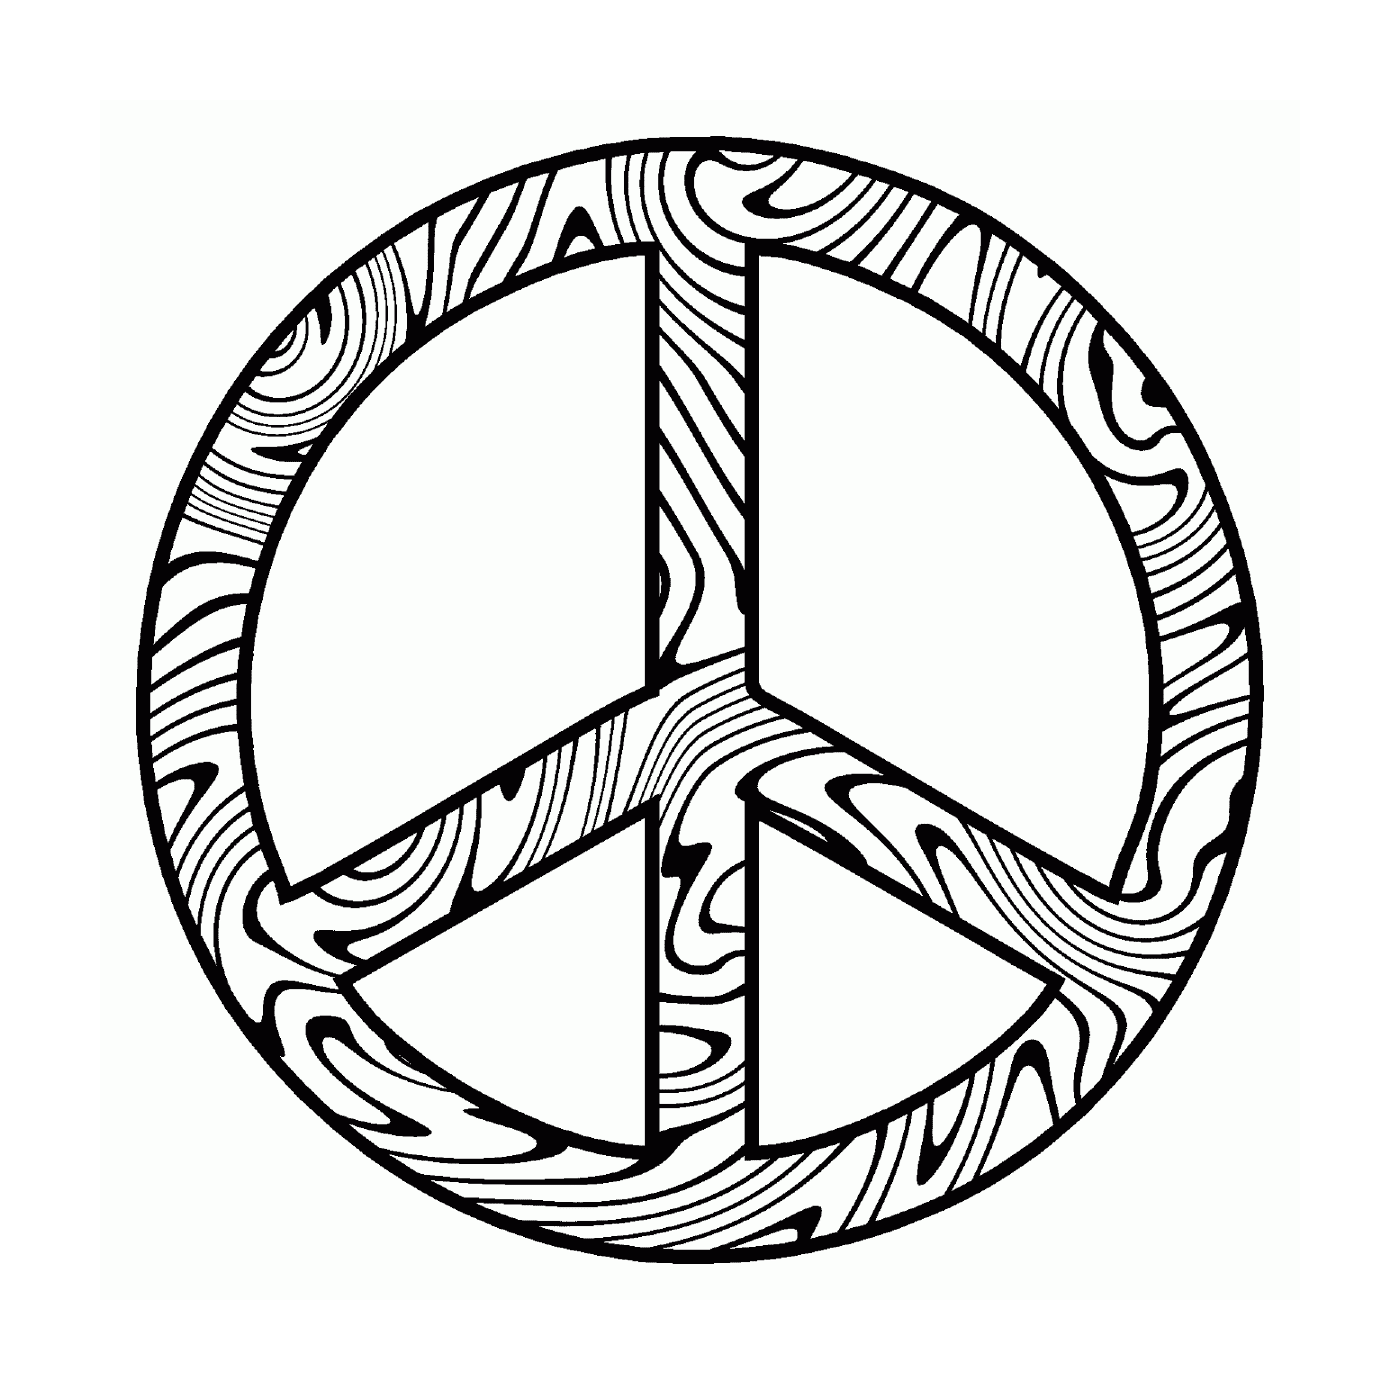  Резюме символа мира 